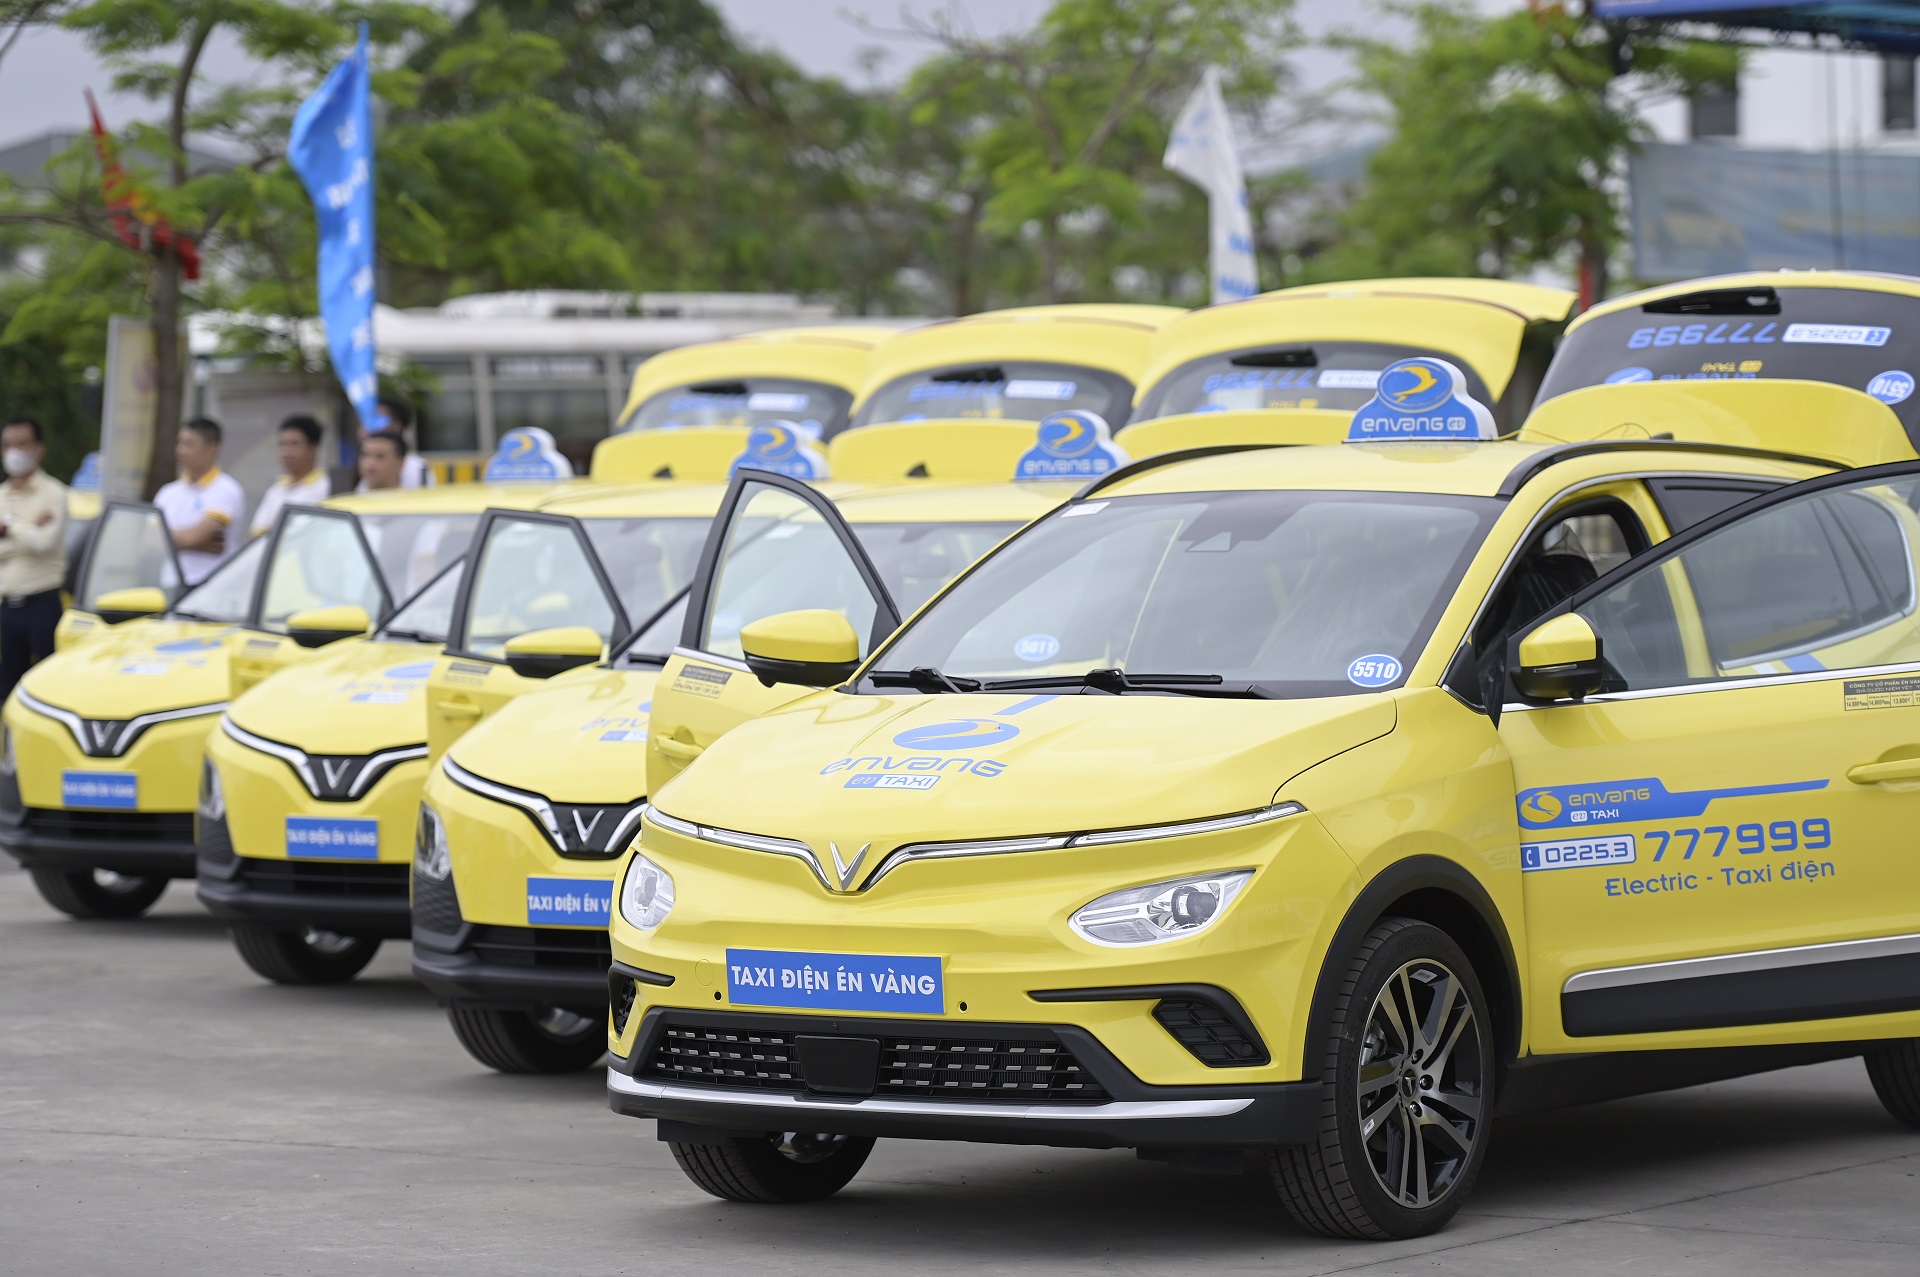 Thêm doanh nghiệp mua và thuê xe ô tô điện VinFast làm dịch vụ taxi điện